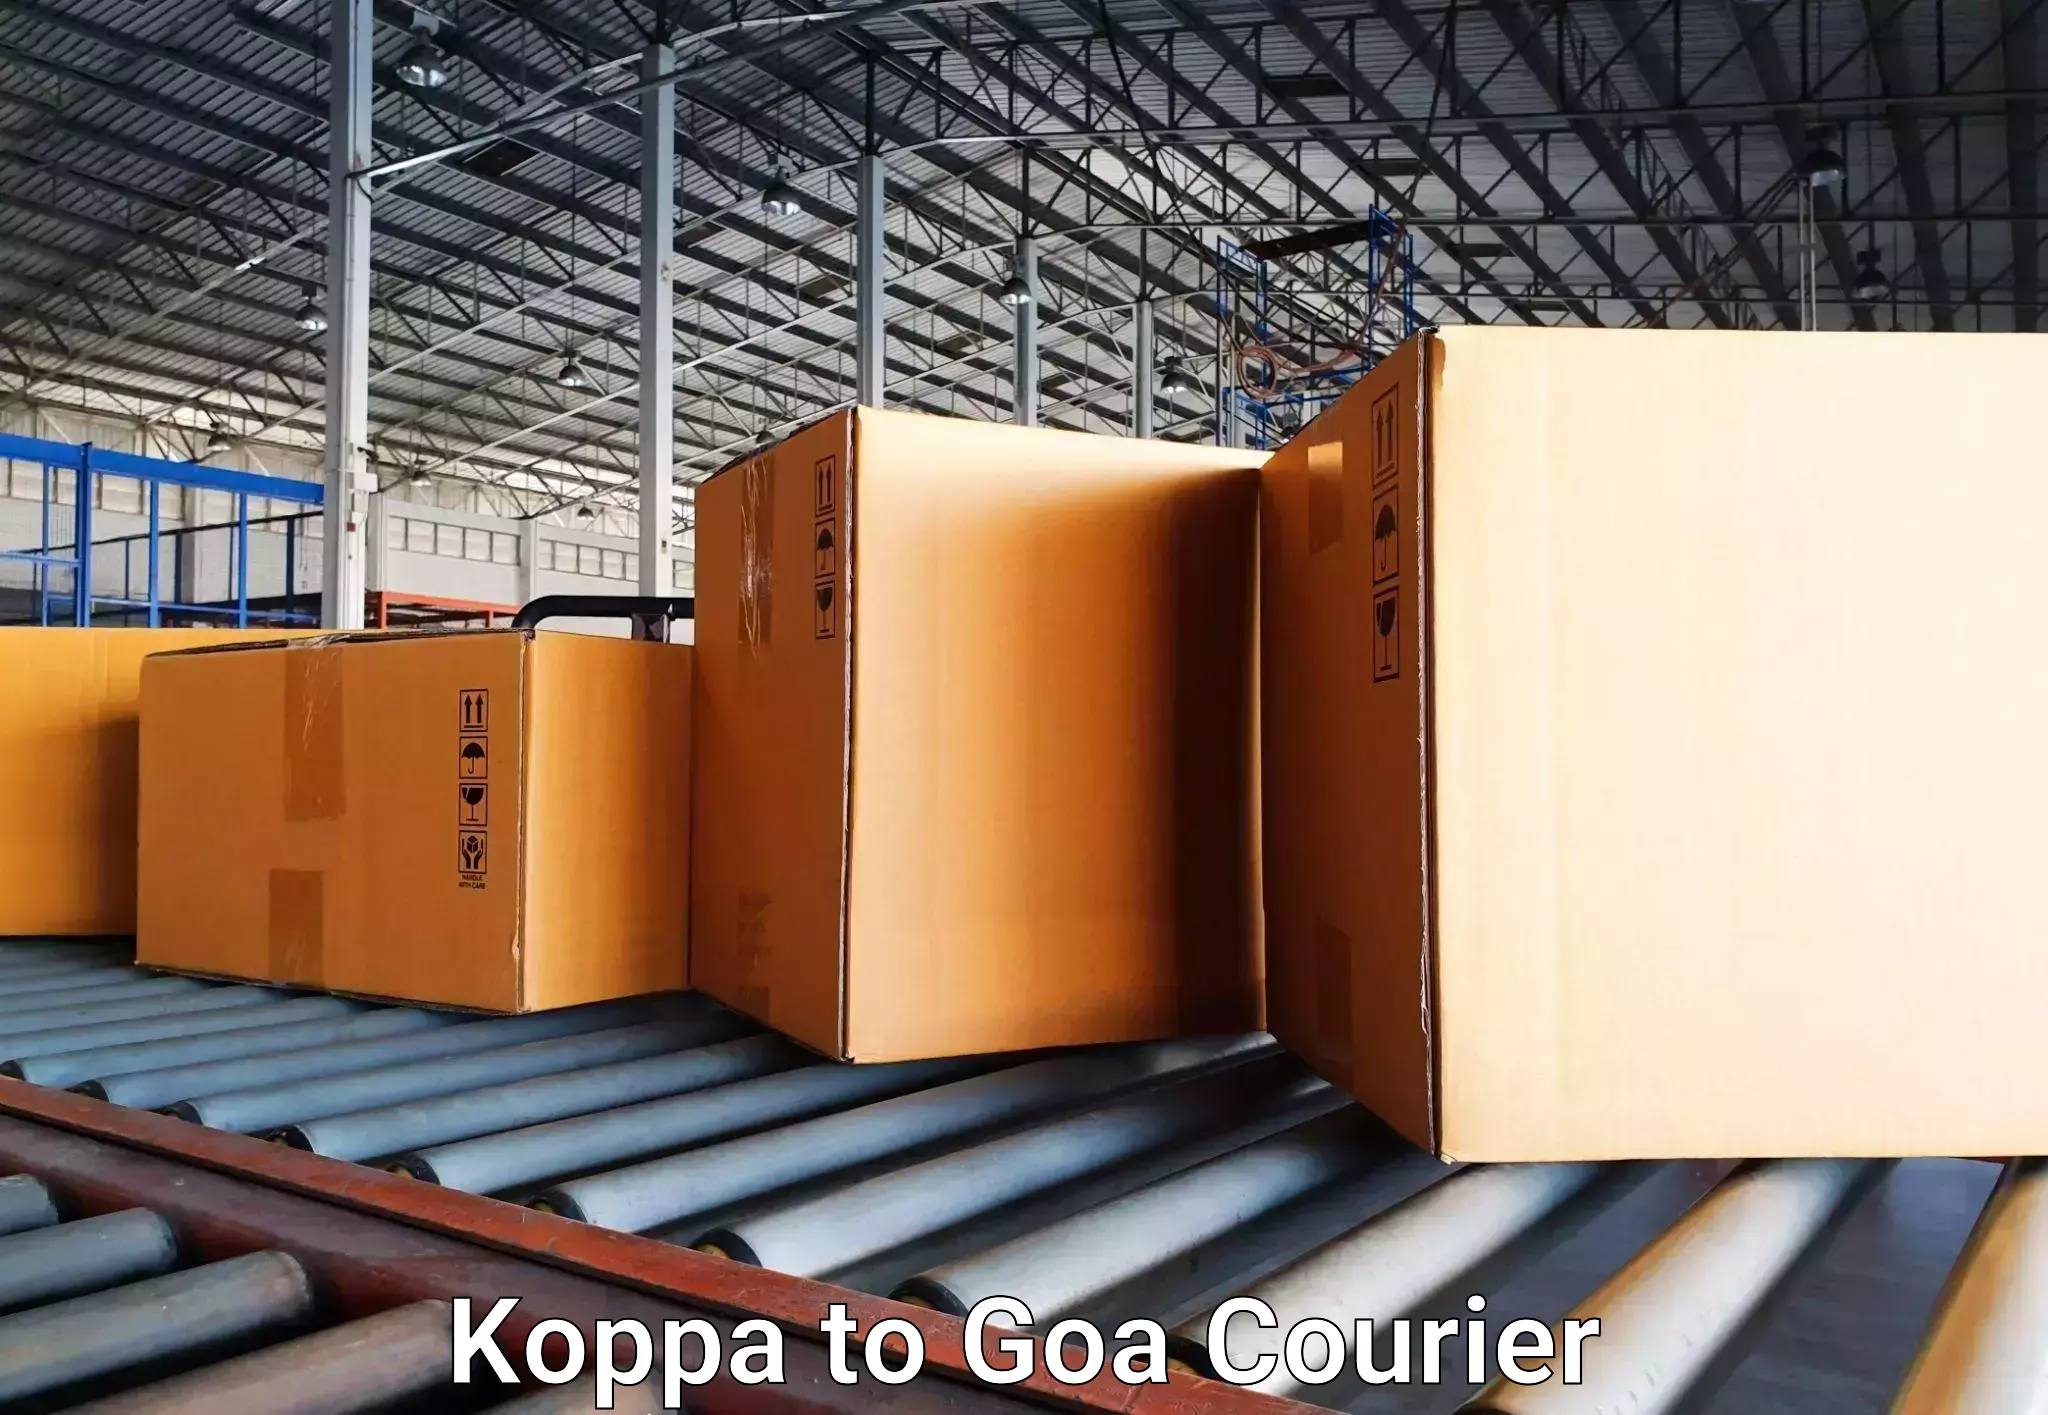 Emergency baggage service Koppa to Goa